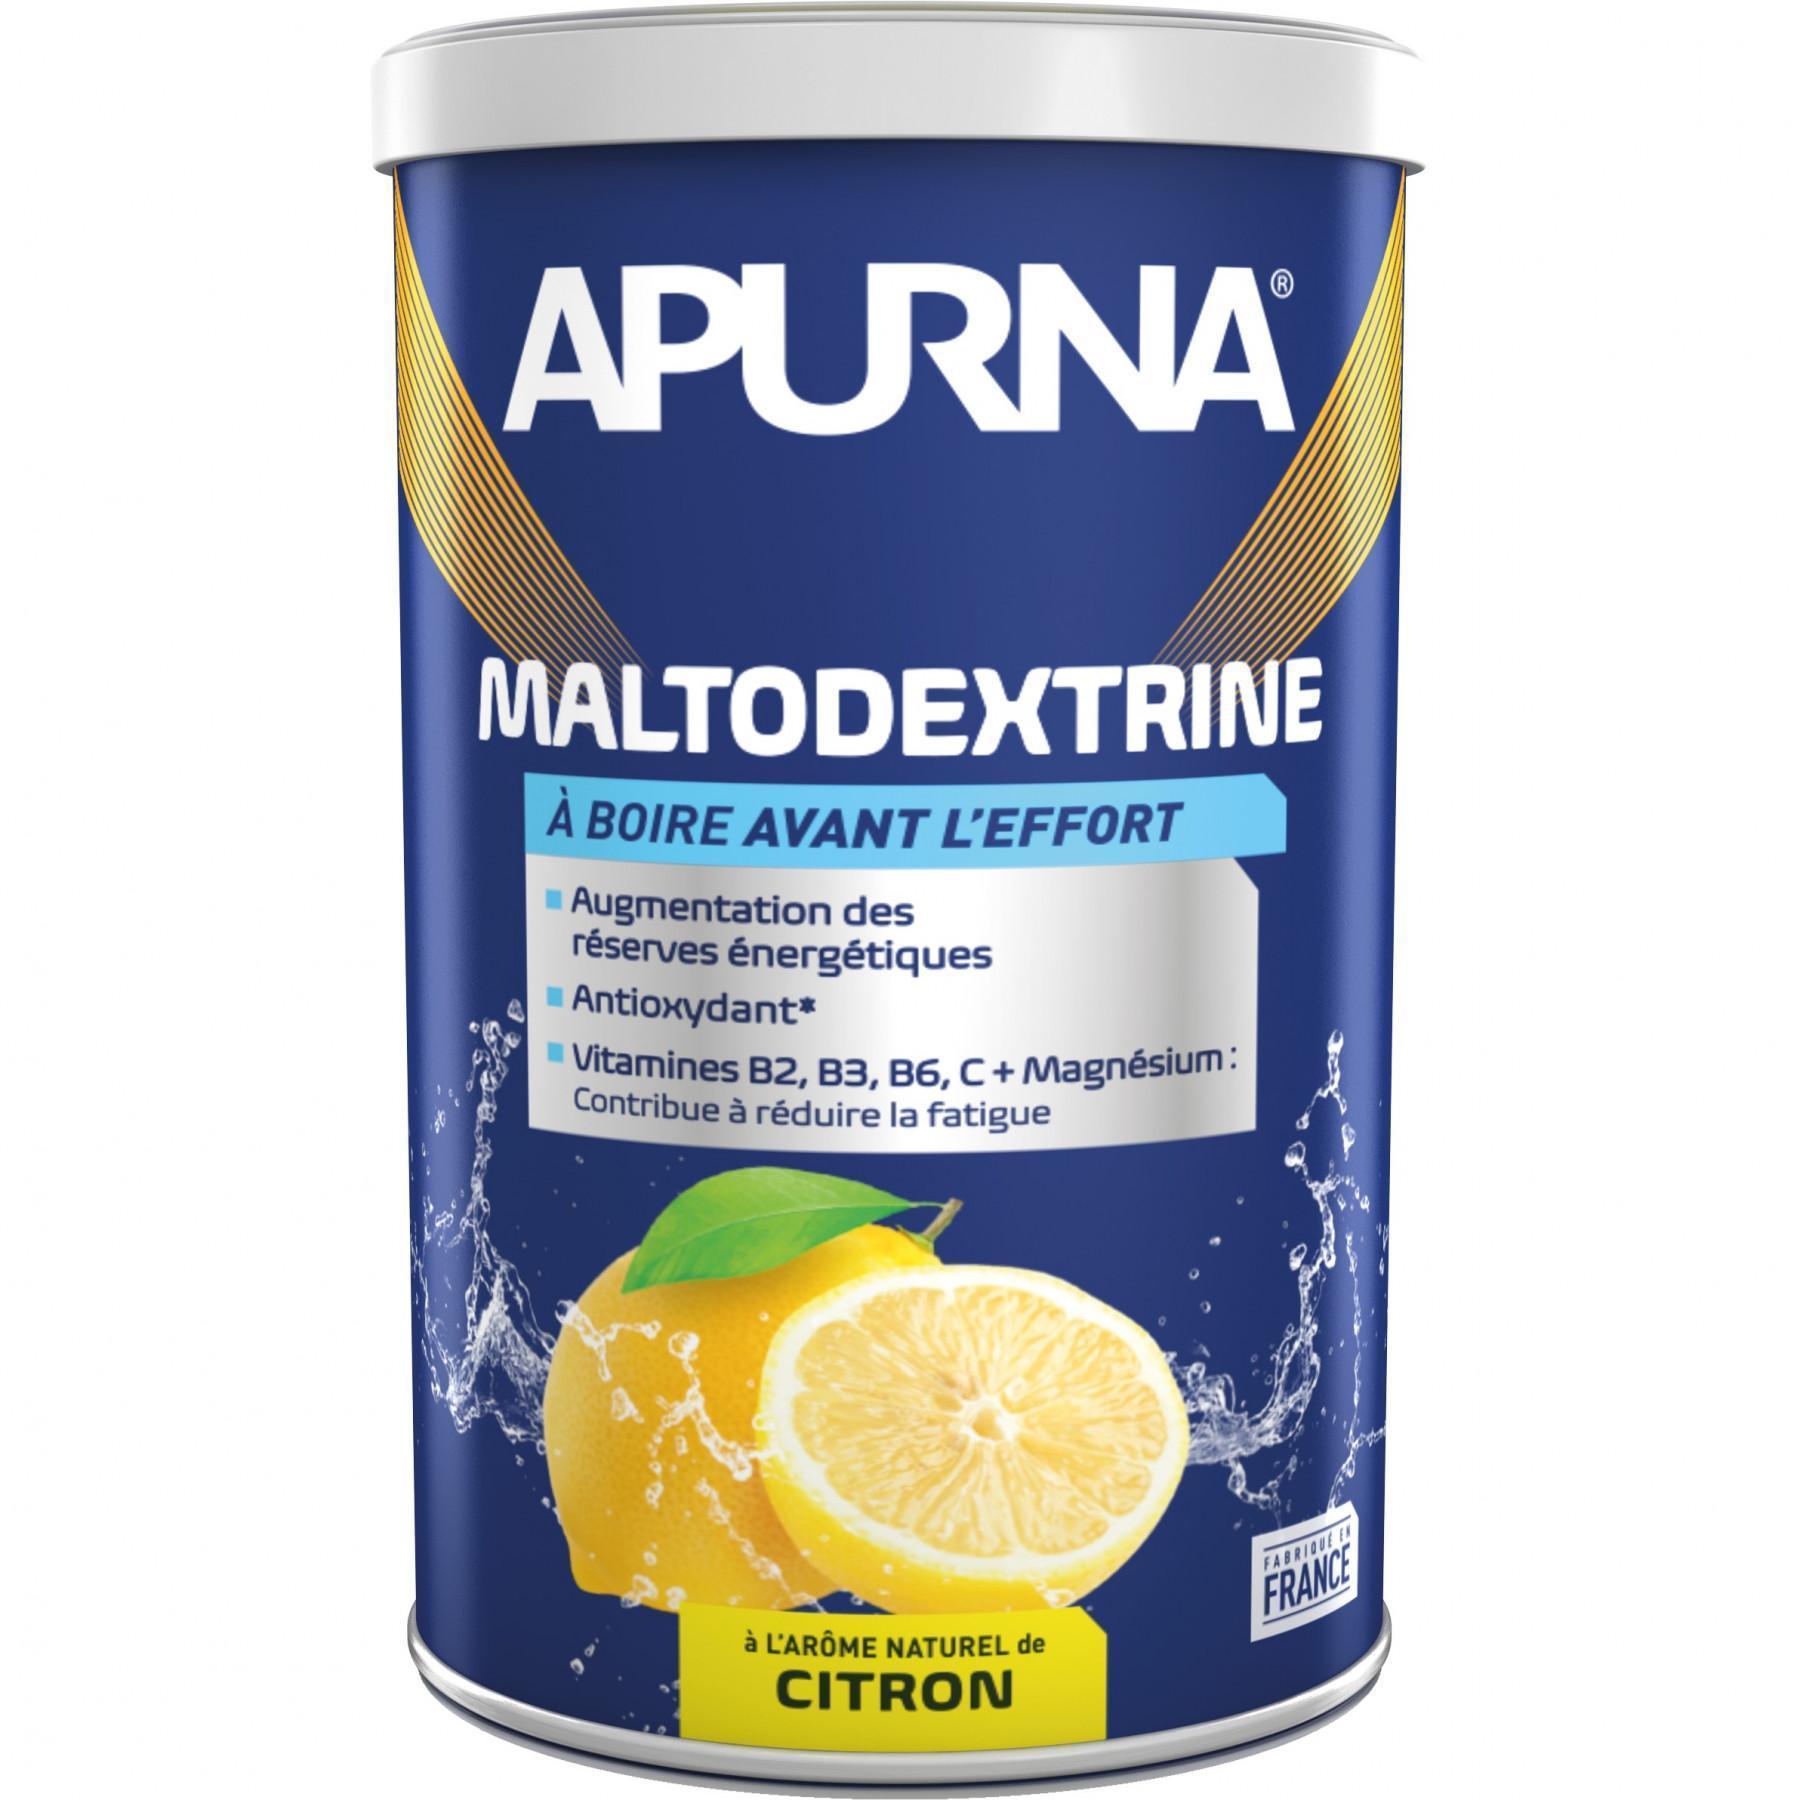 Pote Apurna maltodextrine citron - 500g